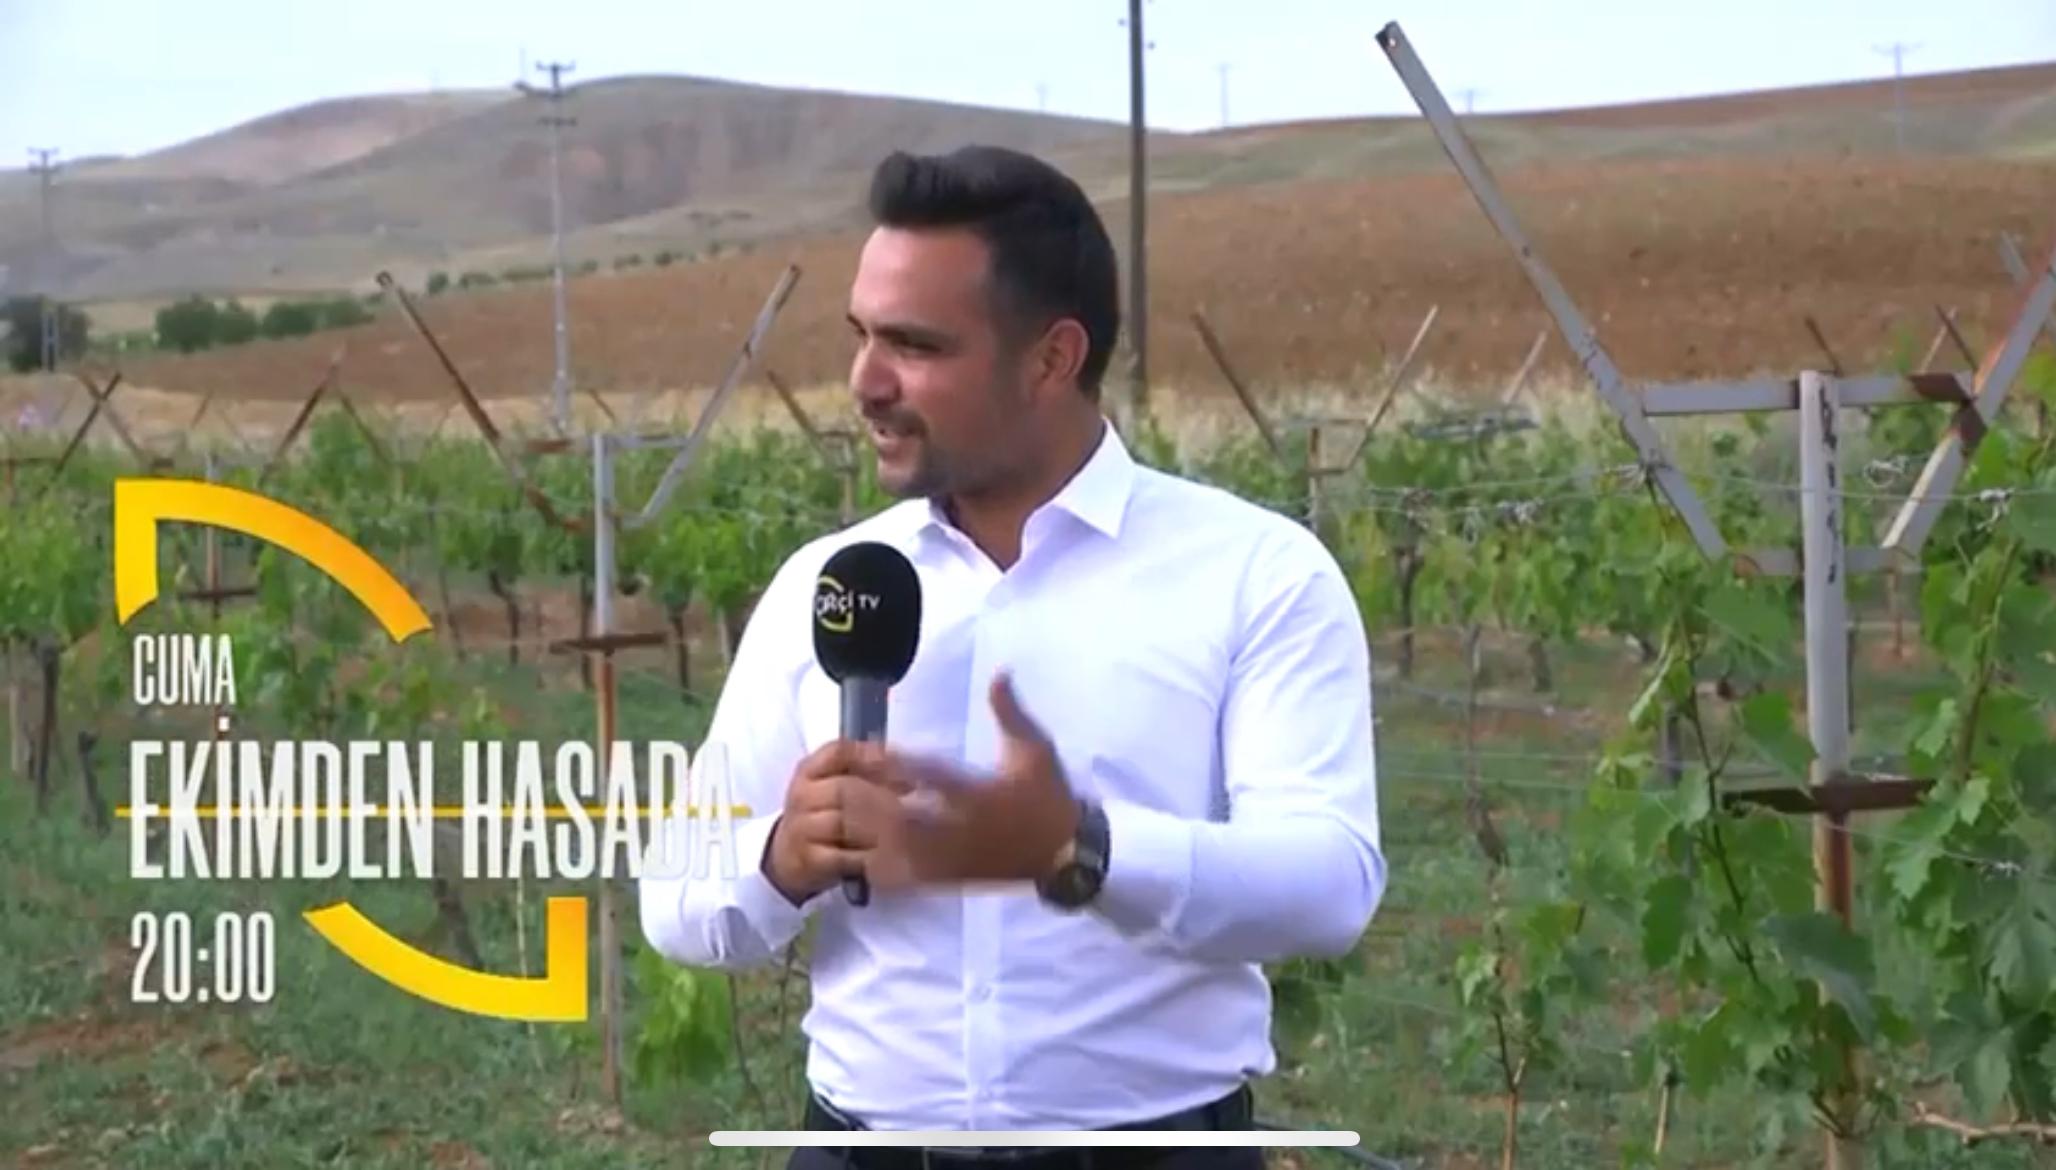 Onur Şencan Çiftçi Tv’ye Konuk Oluyor - Kırıkkale Haber, Son Dakika Kırıkkale Haberleri